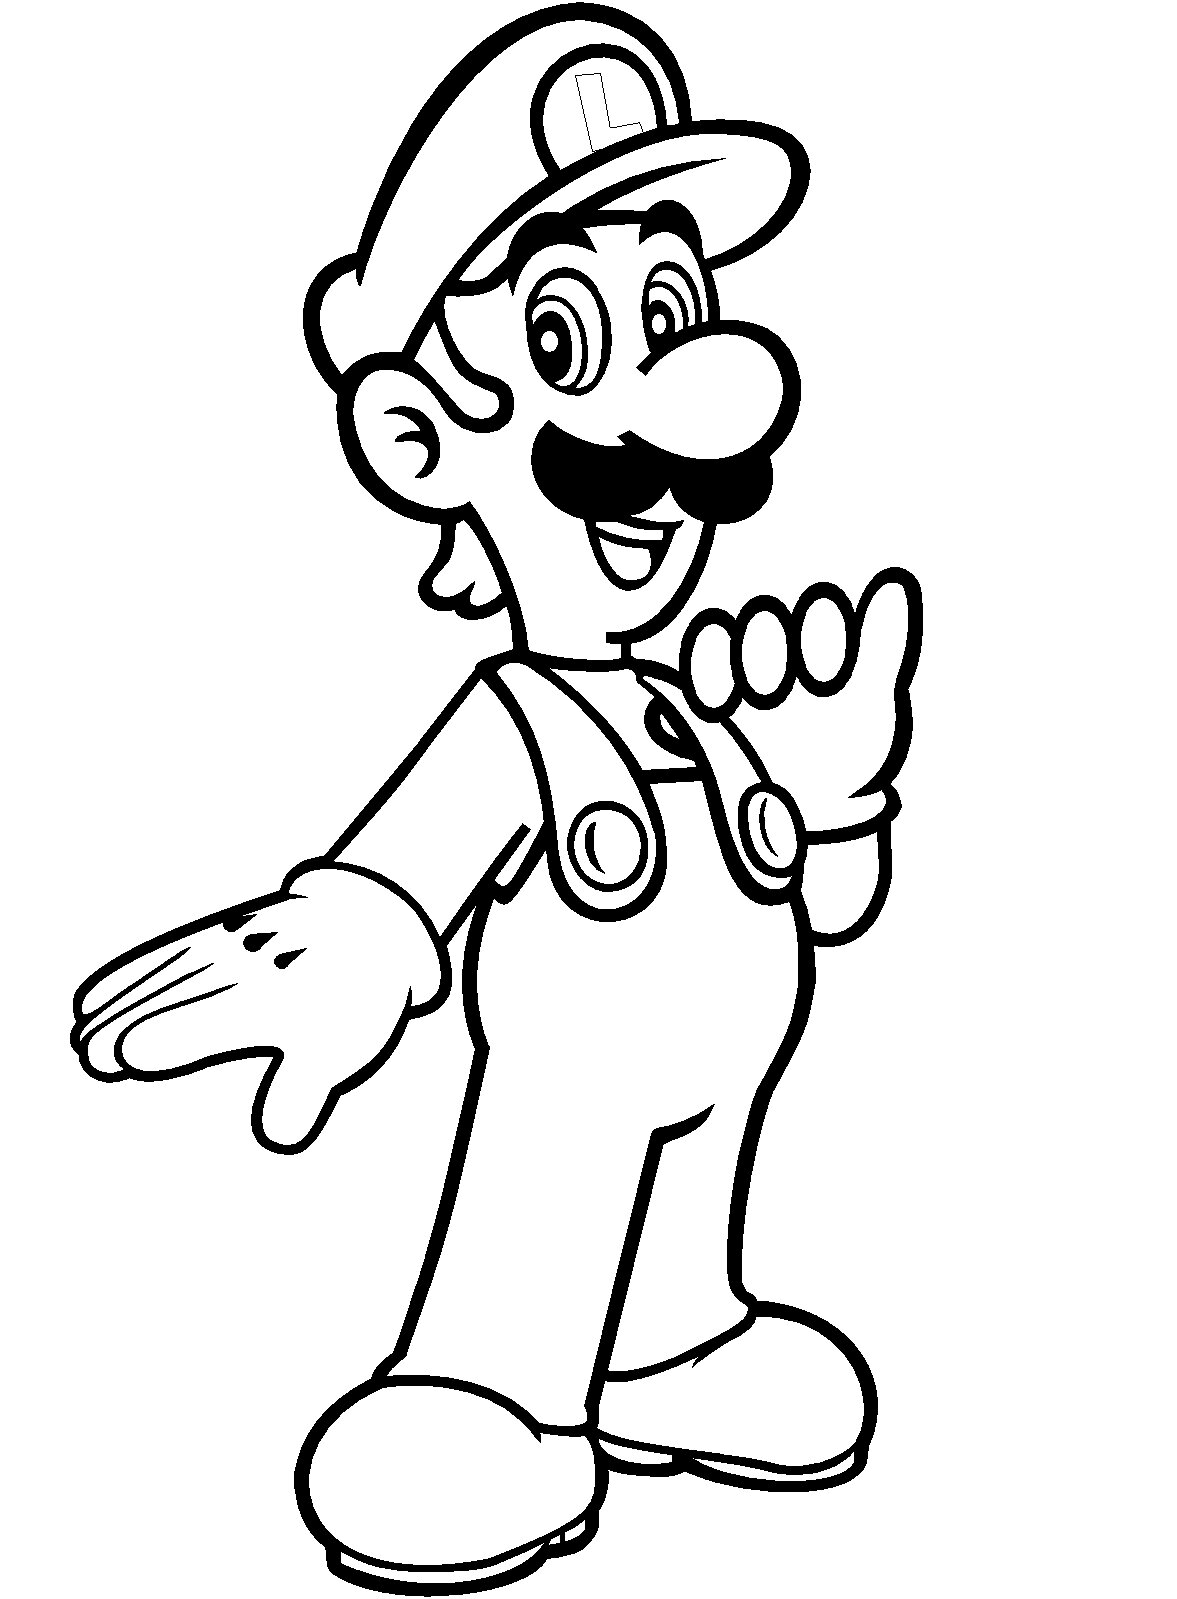 Luigi de Super Mario Bros para colorear